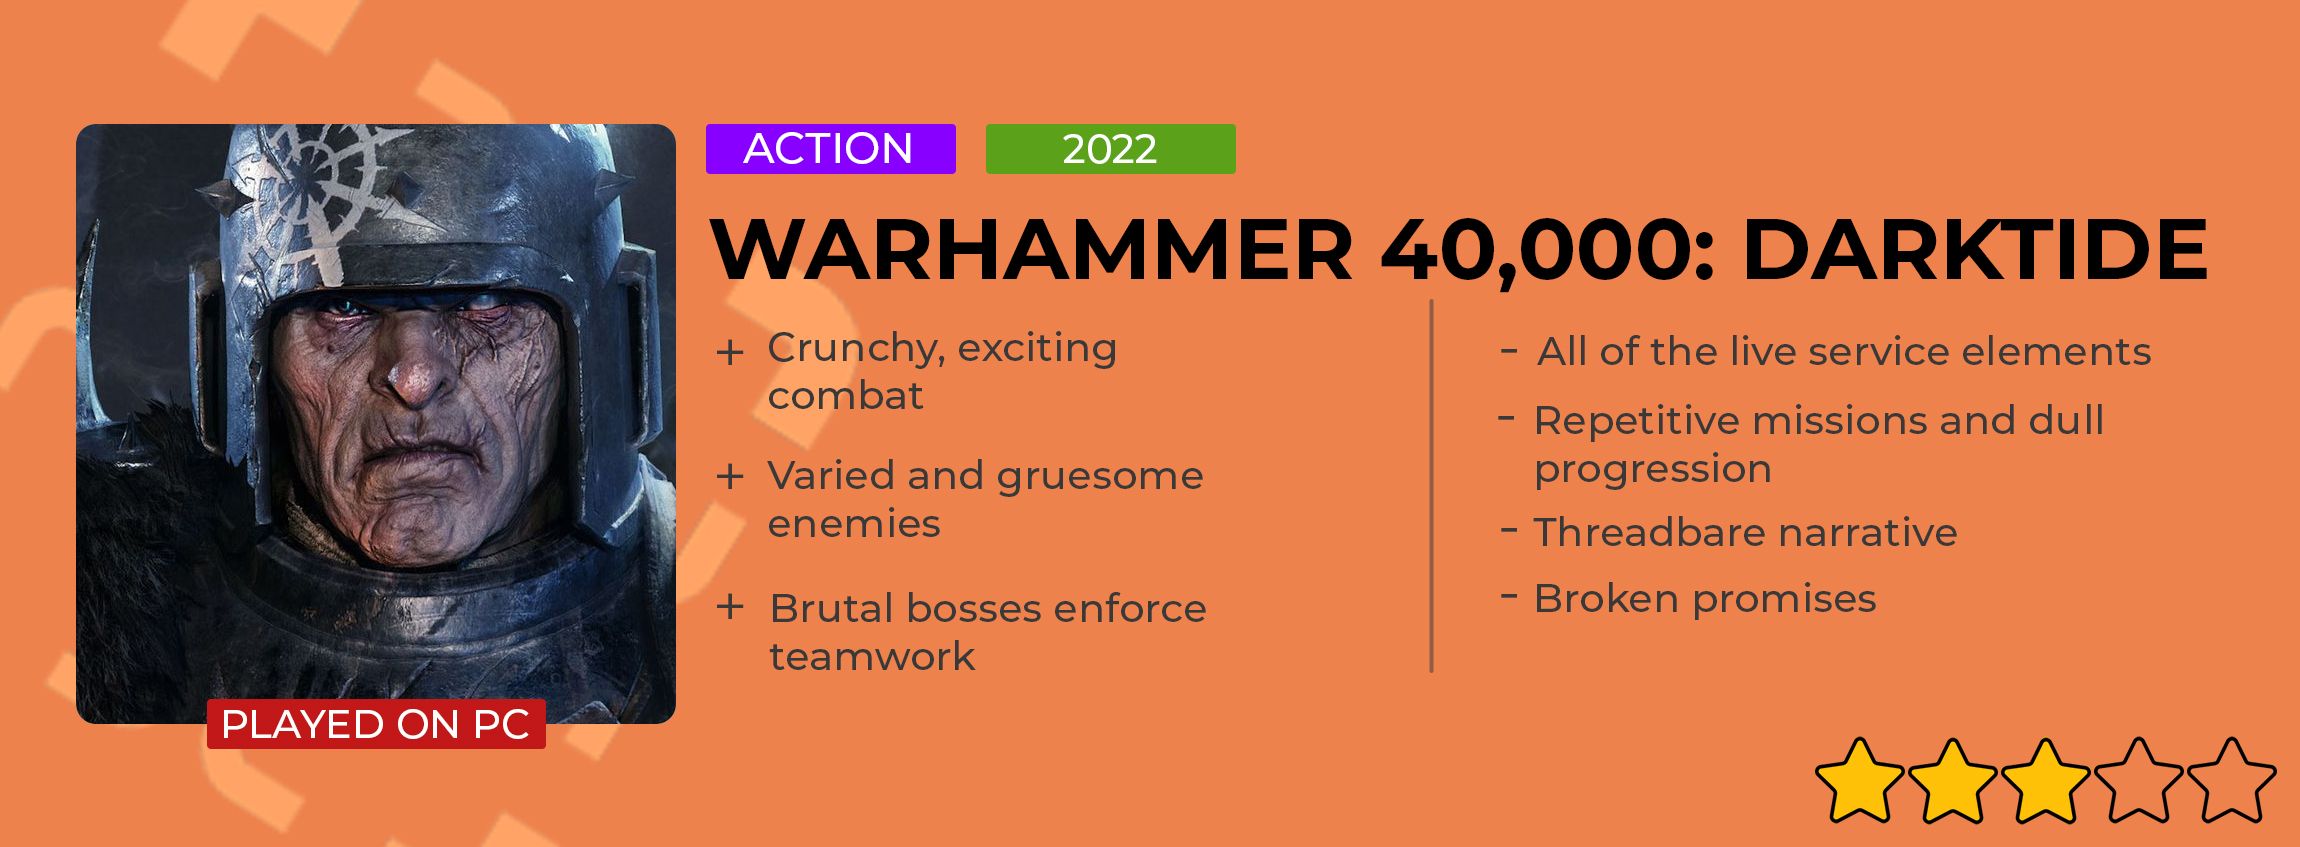 Warhammer 40000 Darktide review card